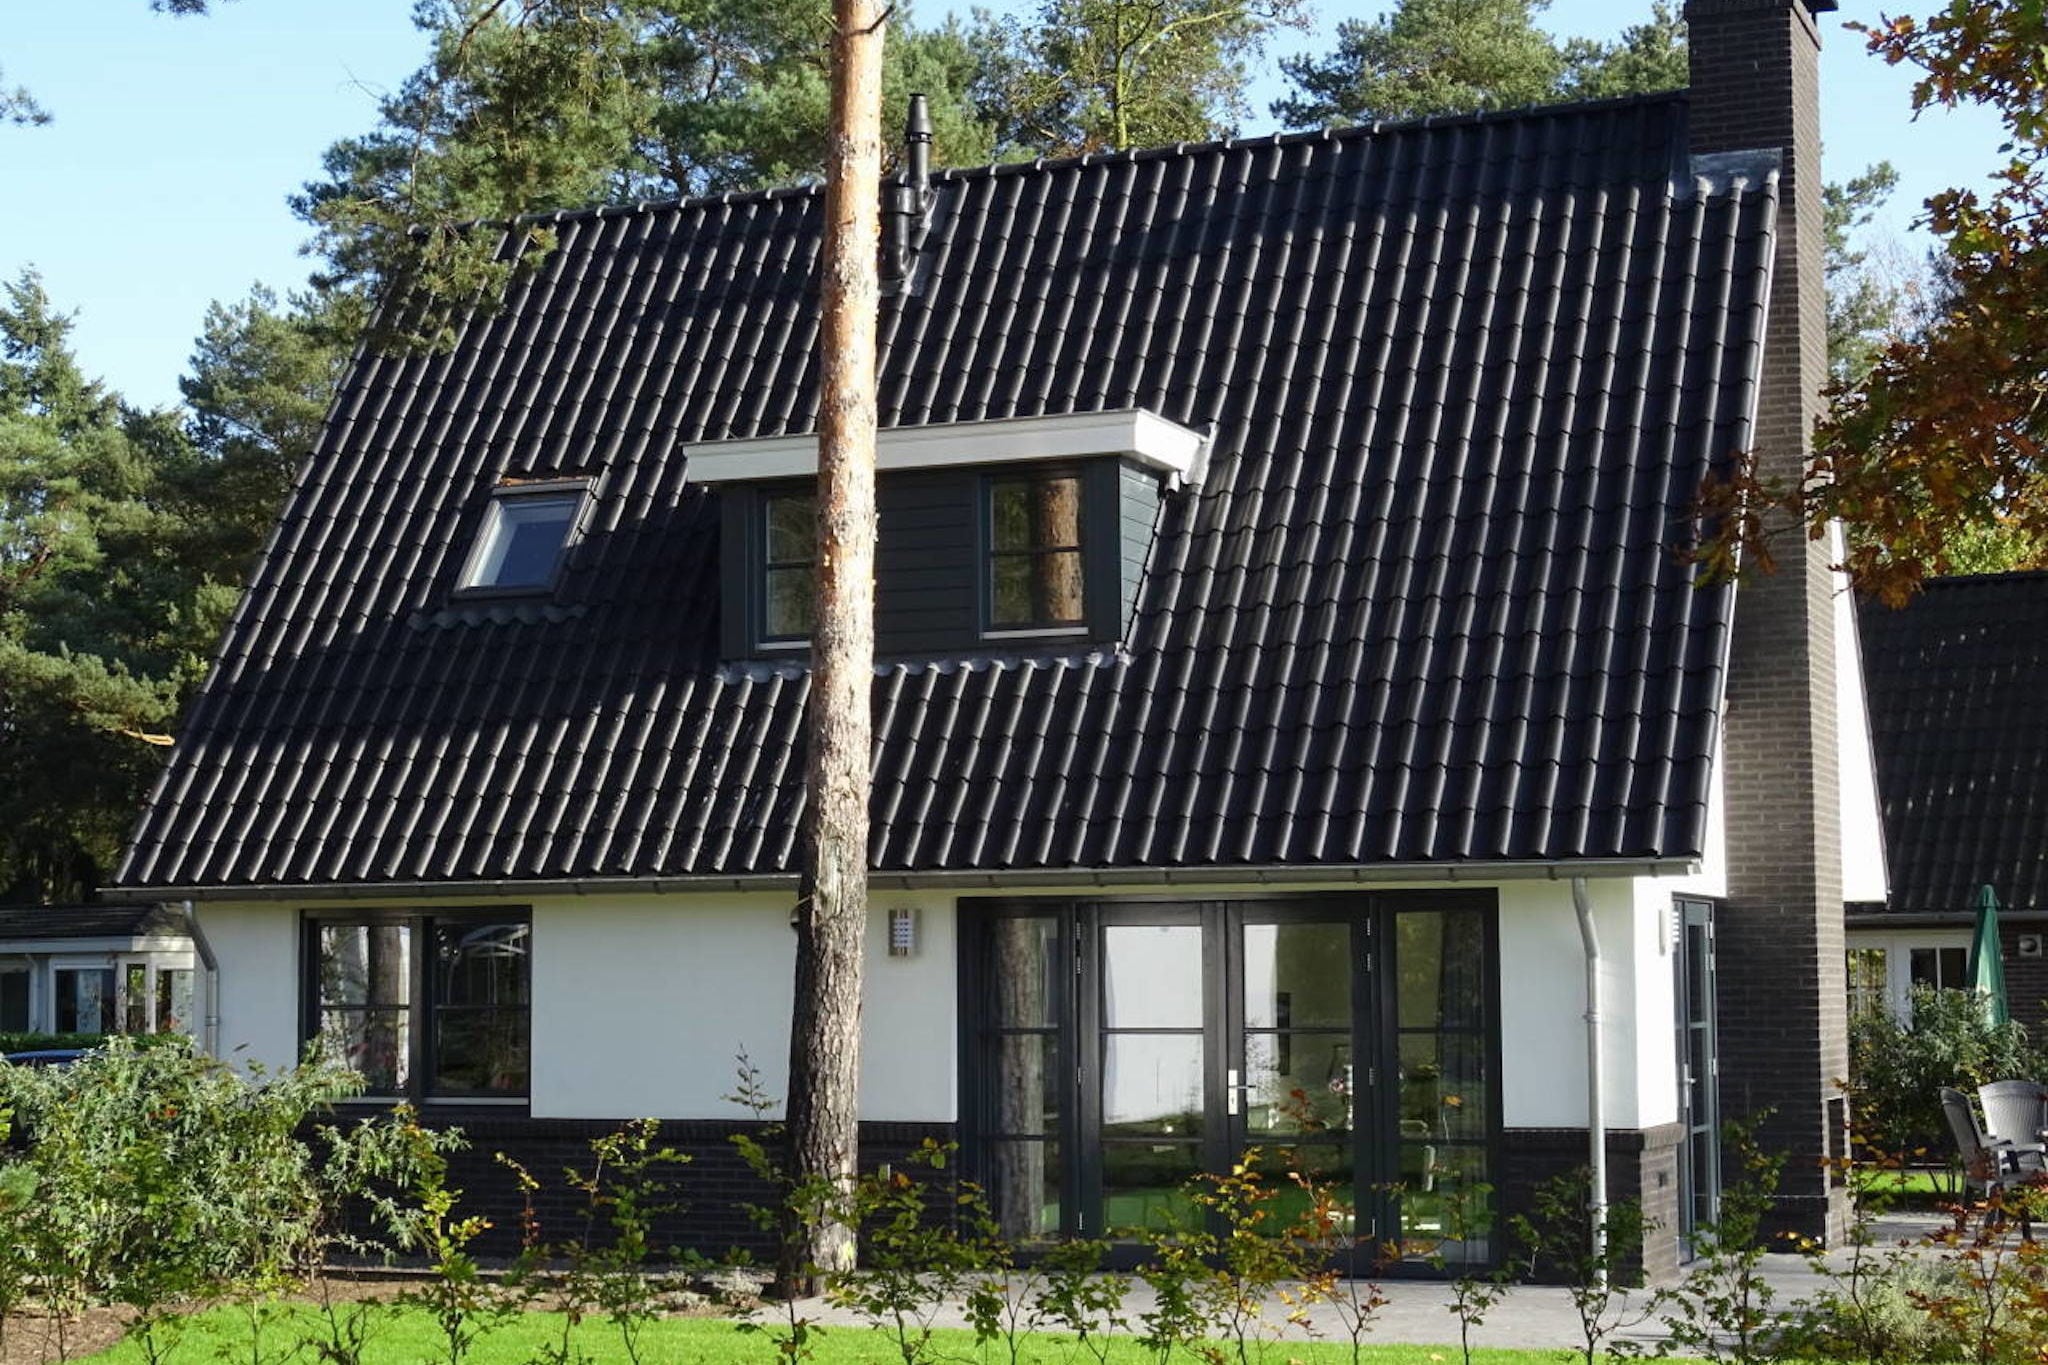 Modern villa located in the Achterhoek